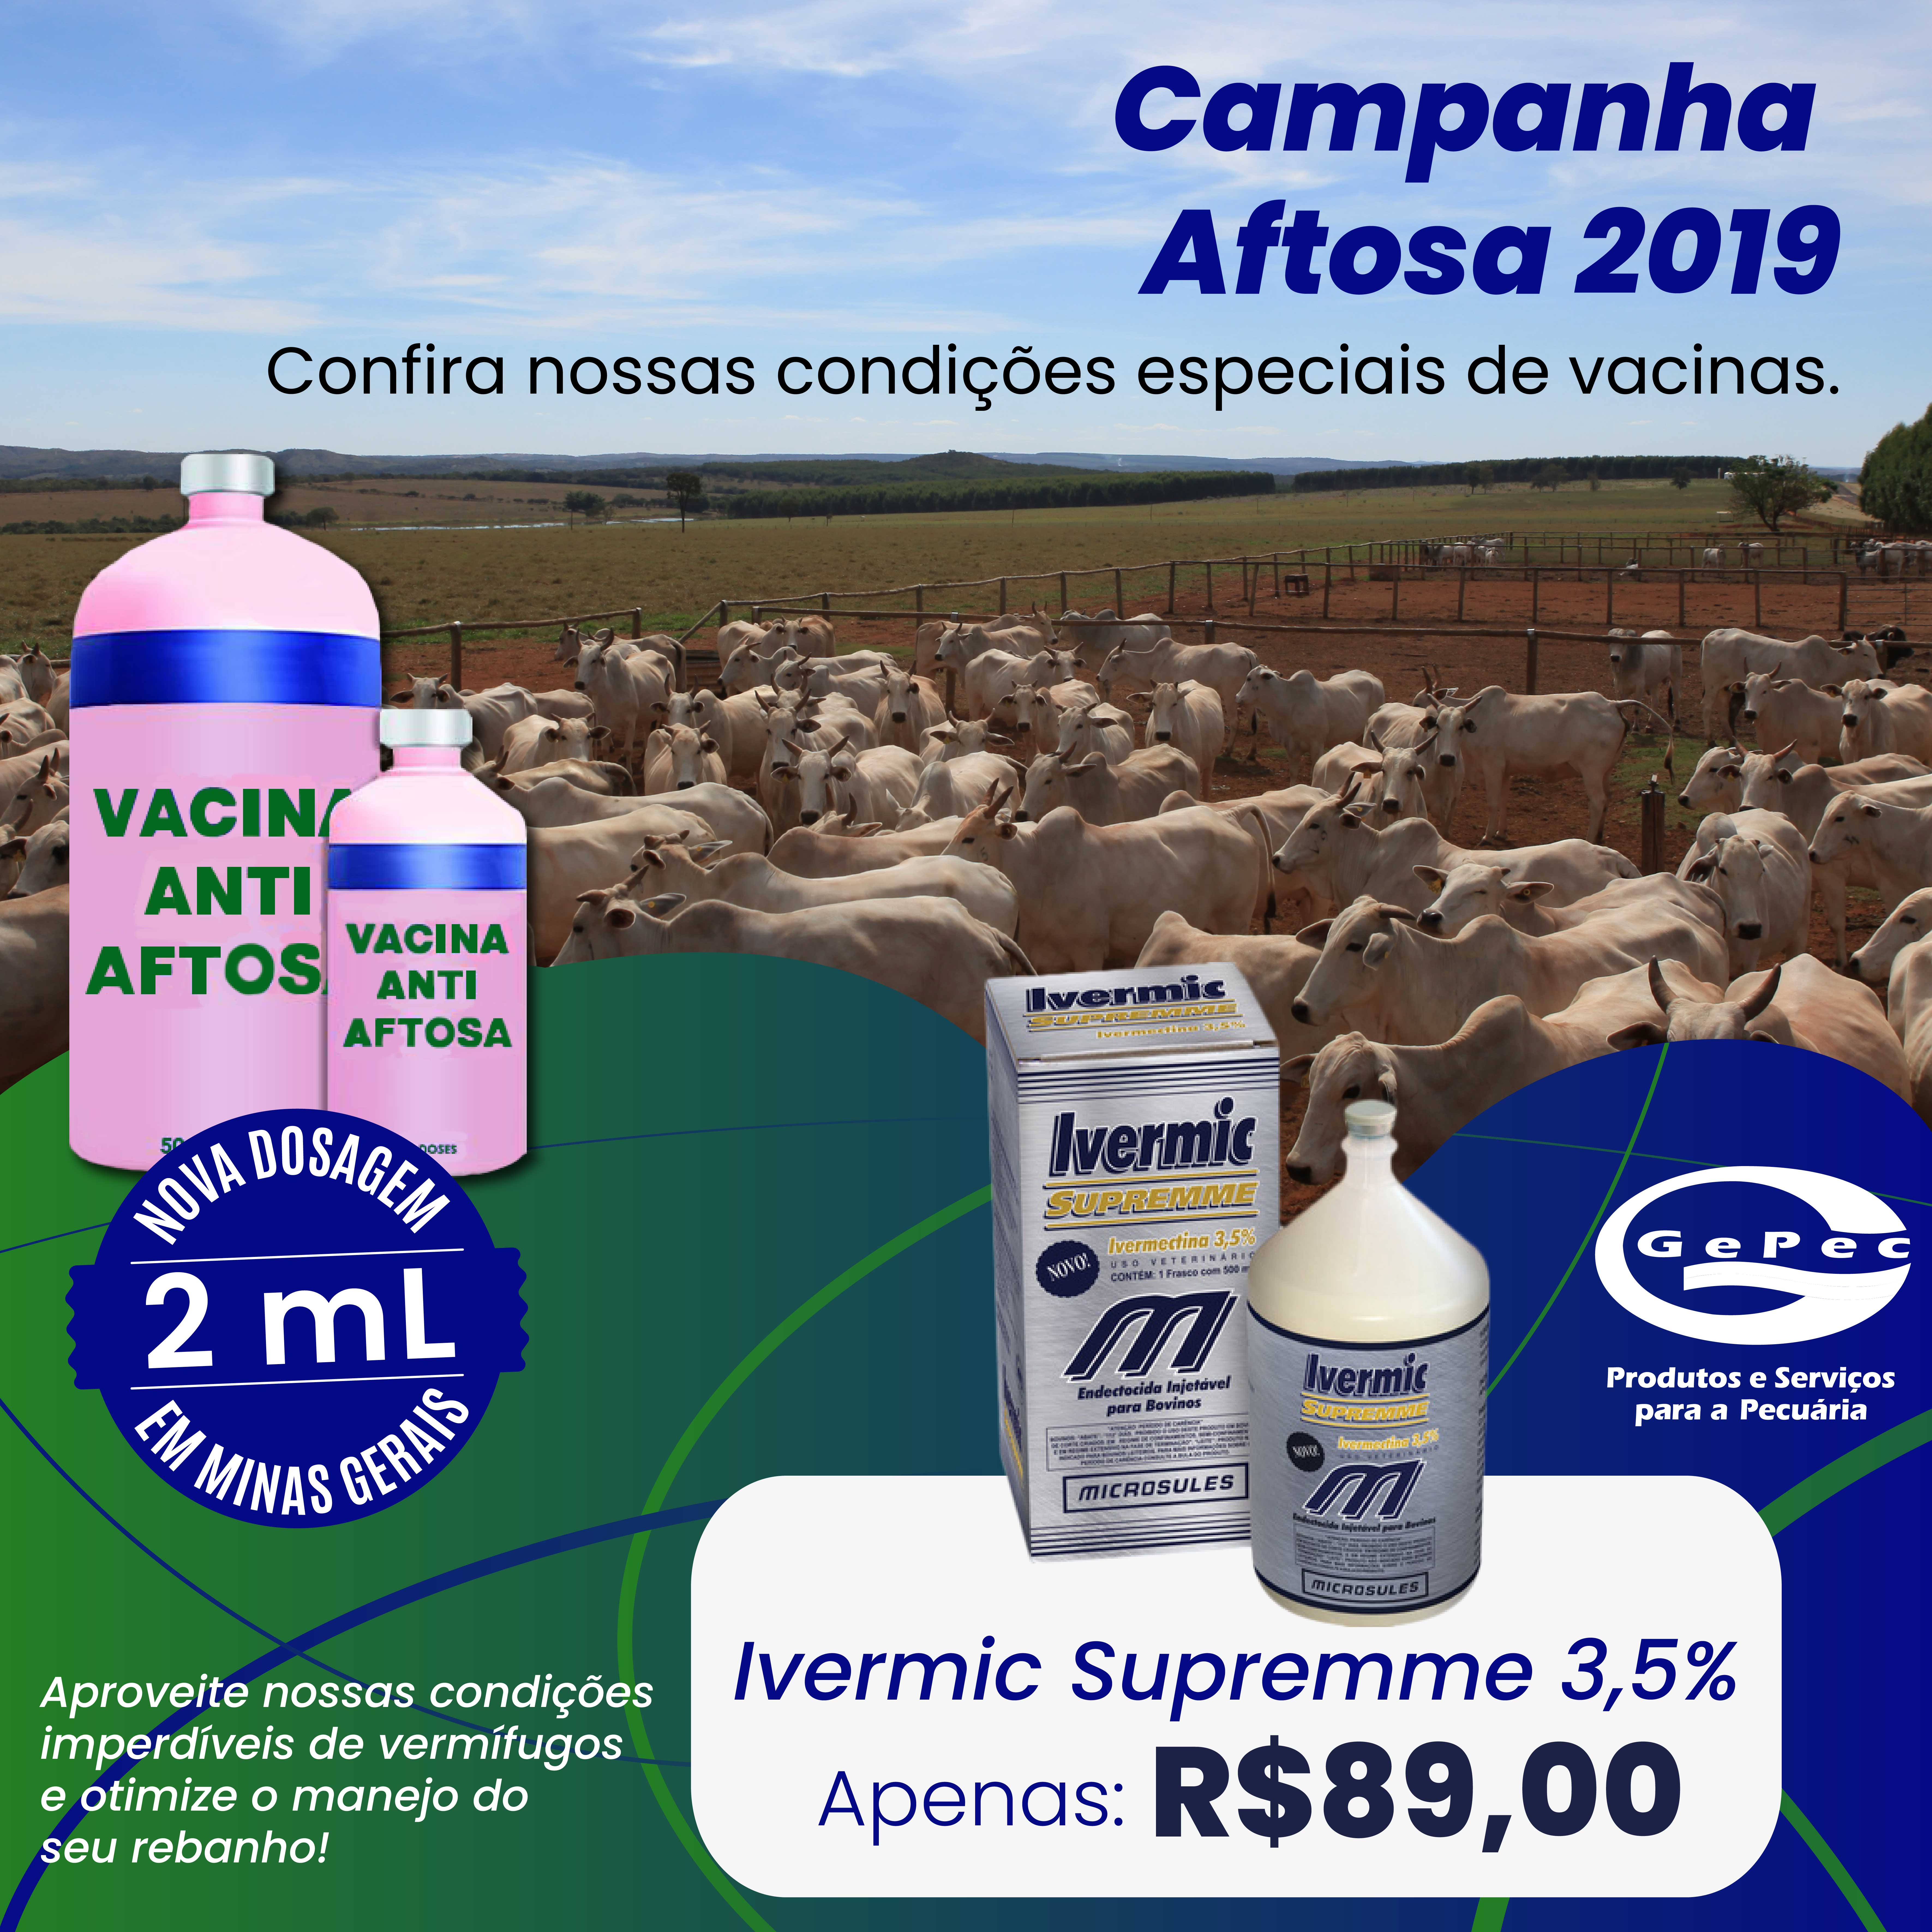 Campanha Aftosa 2019 - Compre vacinas com ótimos preços na Gepec.